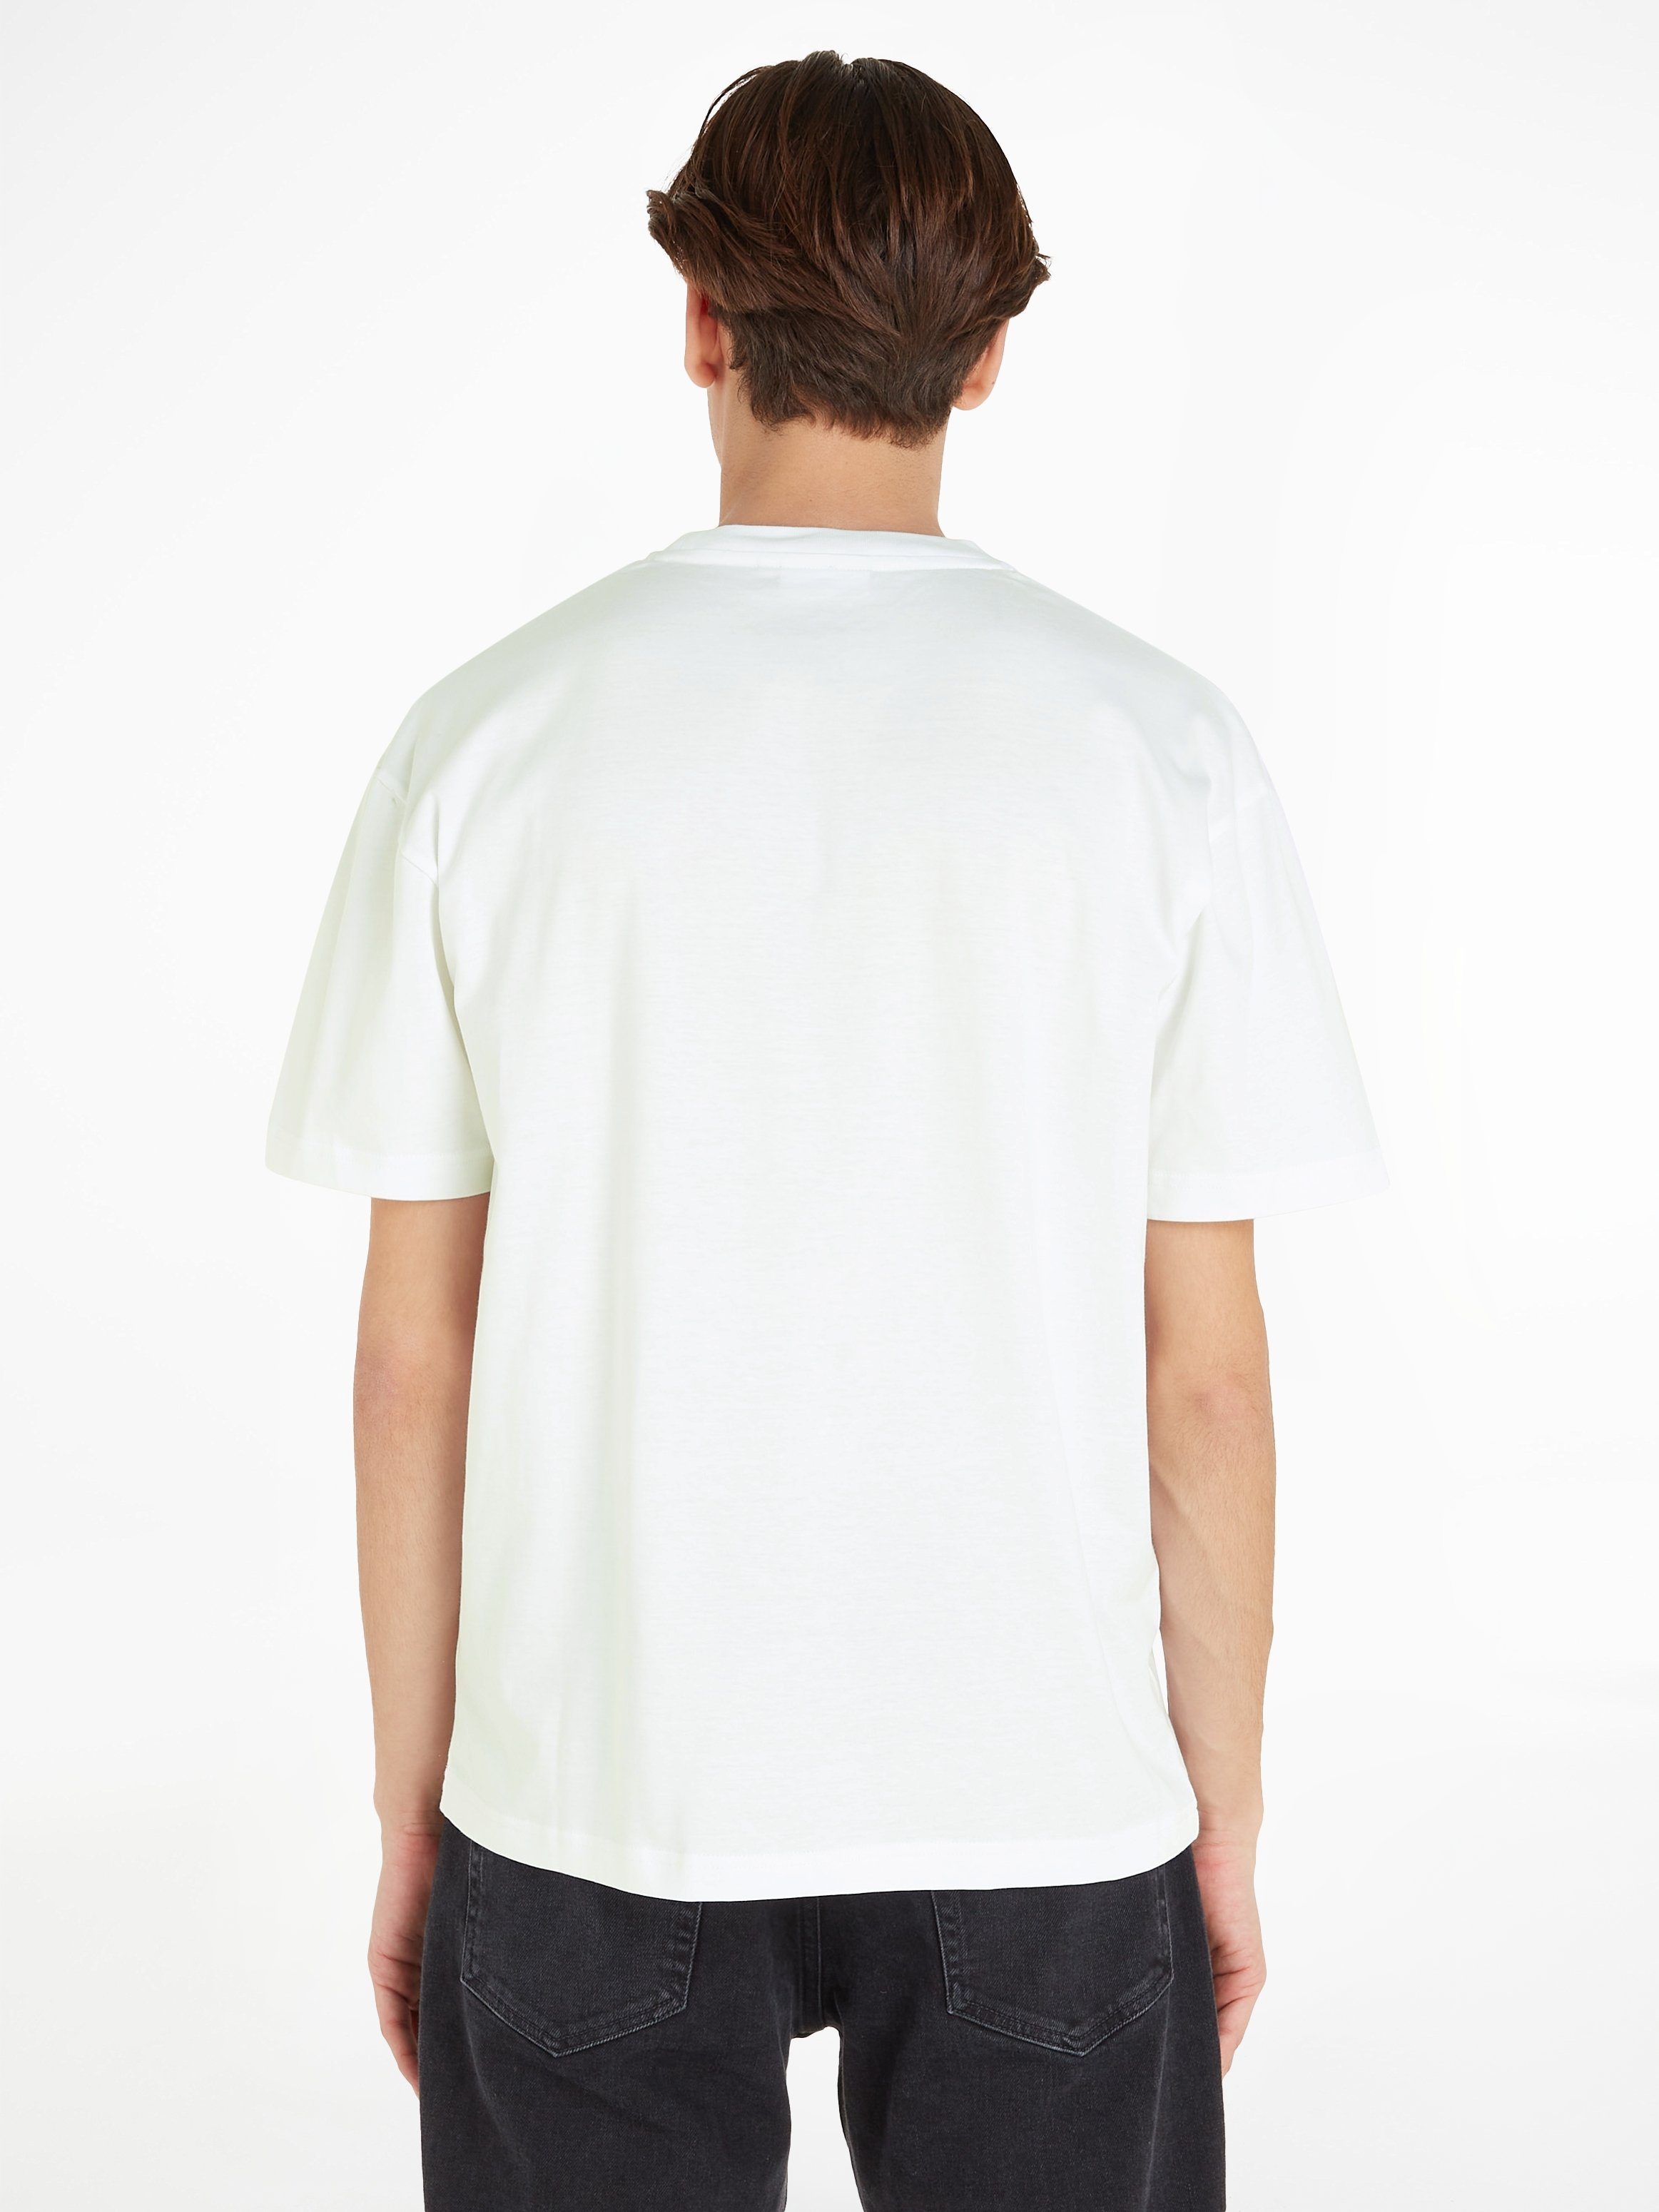 Calvin Klein T-Shirt HERO LOGO mit Bright aufgedrucktem White T-SHIRT Markenlabel COMFORT